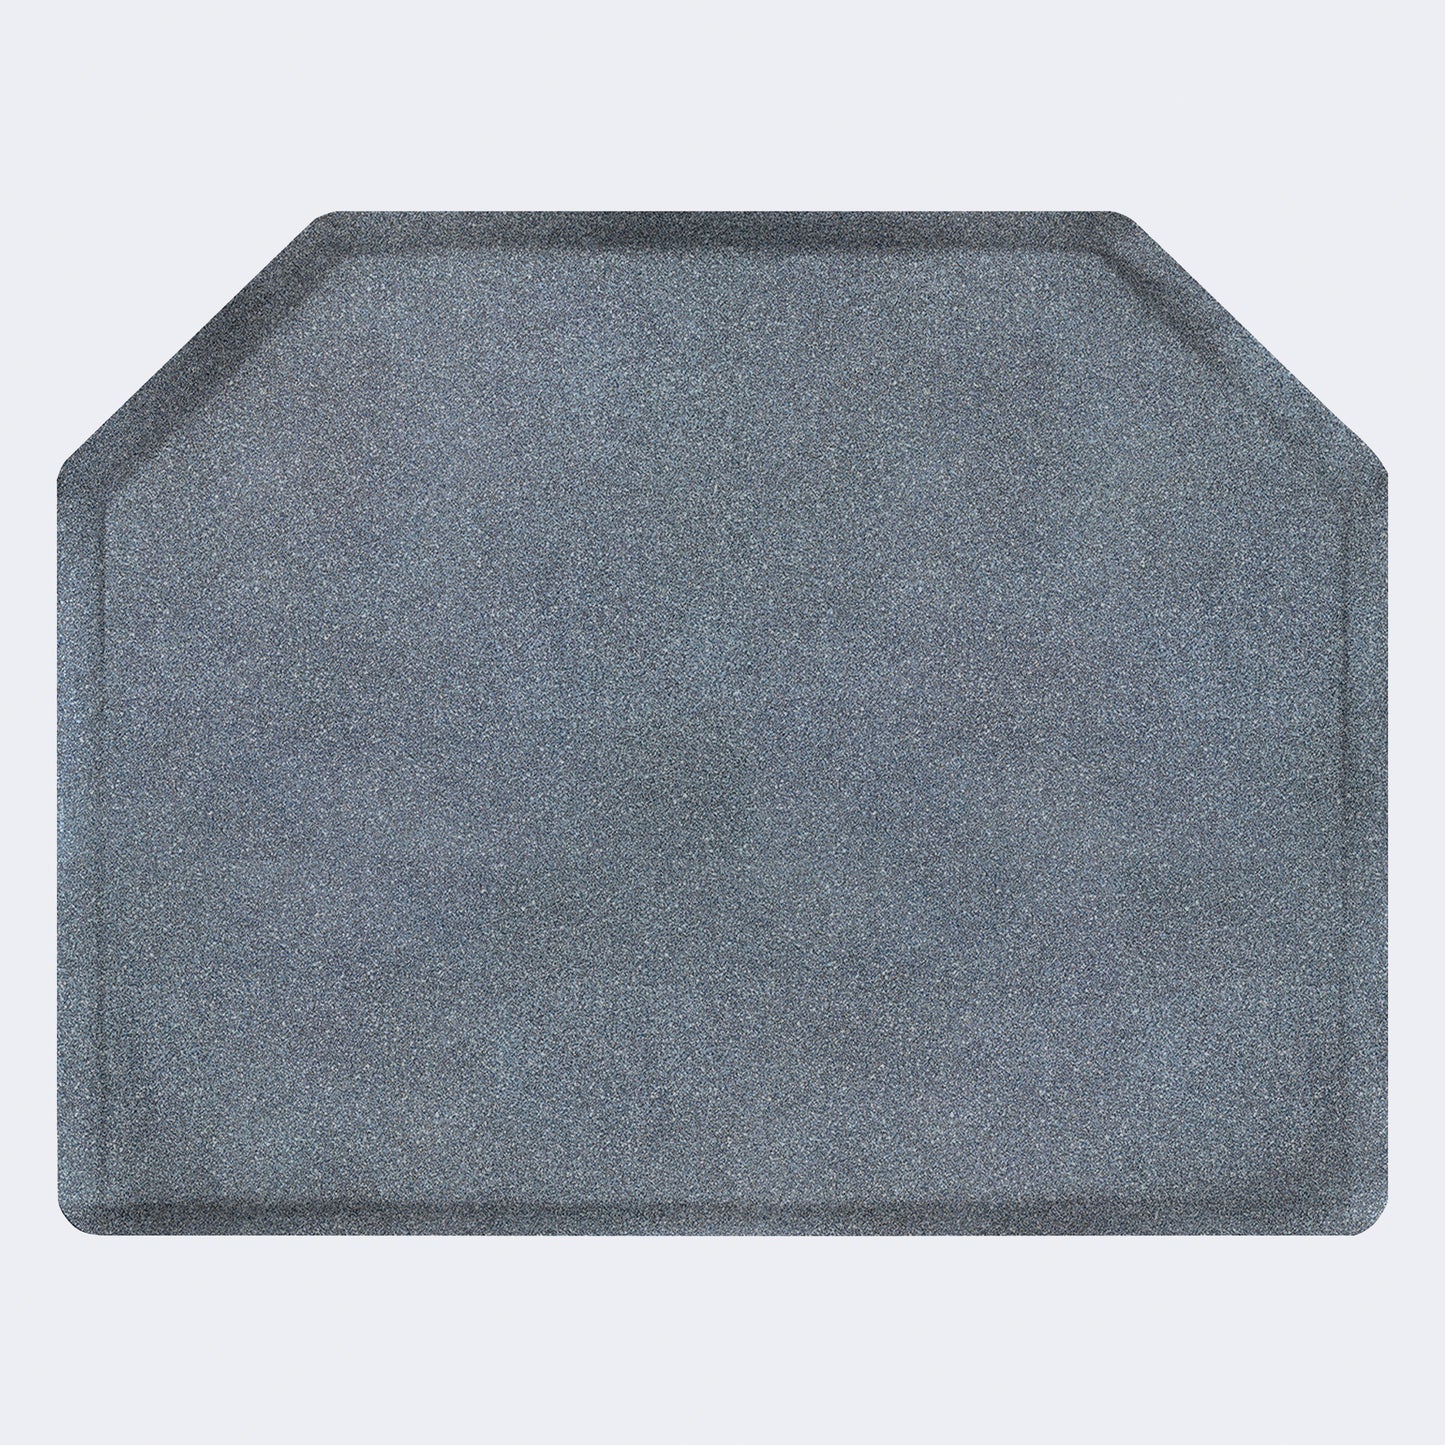 Square Mat Elite 4' X 5' Granite